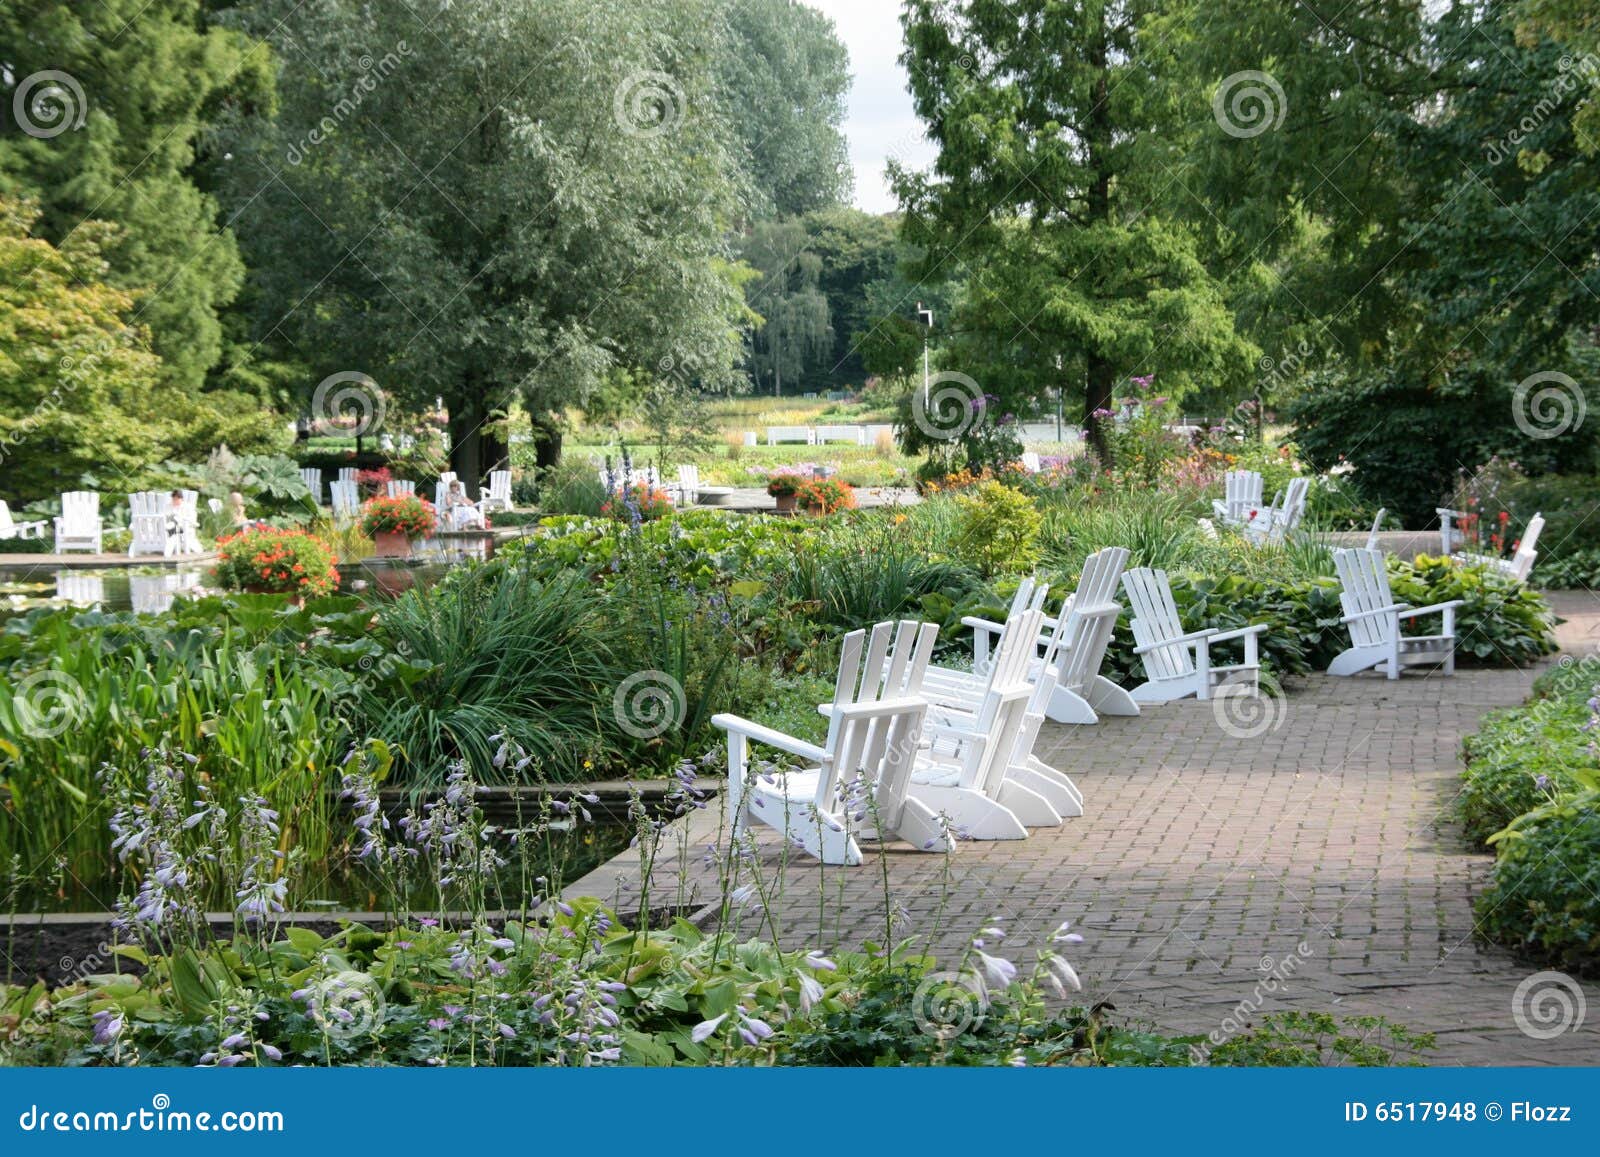 Park Planten un Blomen stock photo. Image of chair, chairs - 6517948